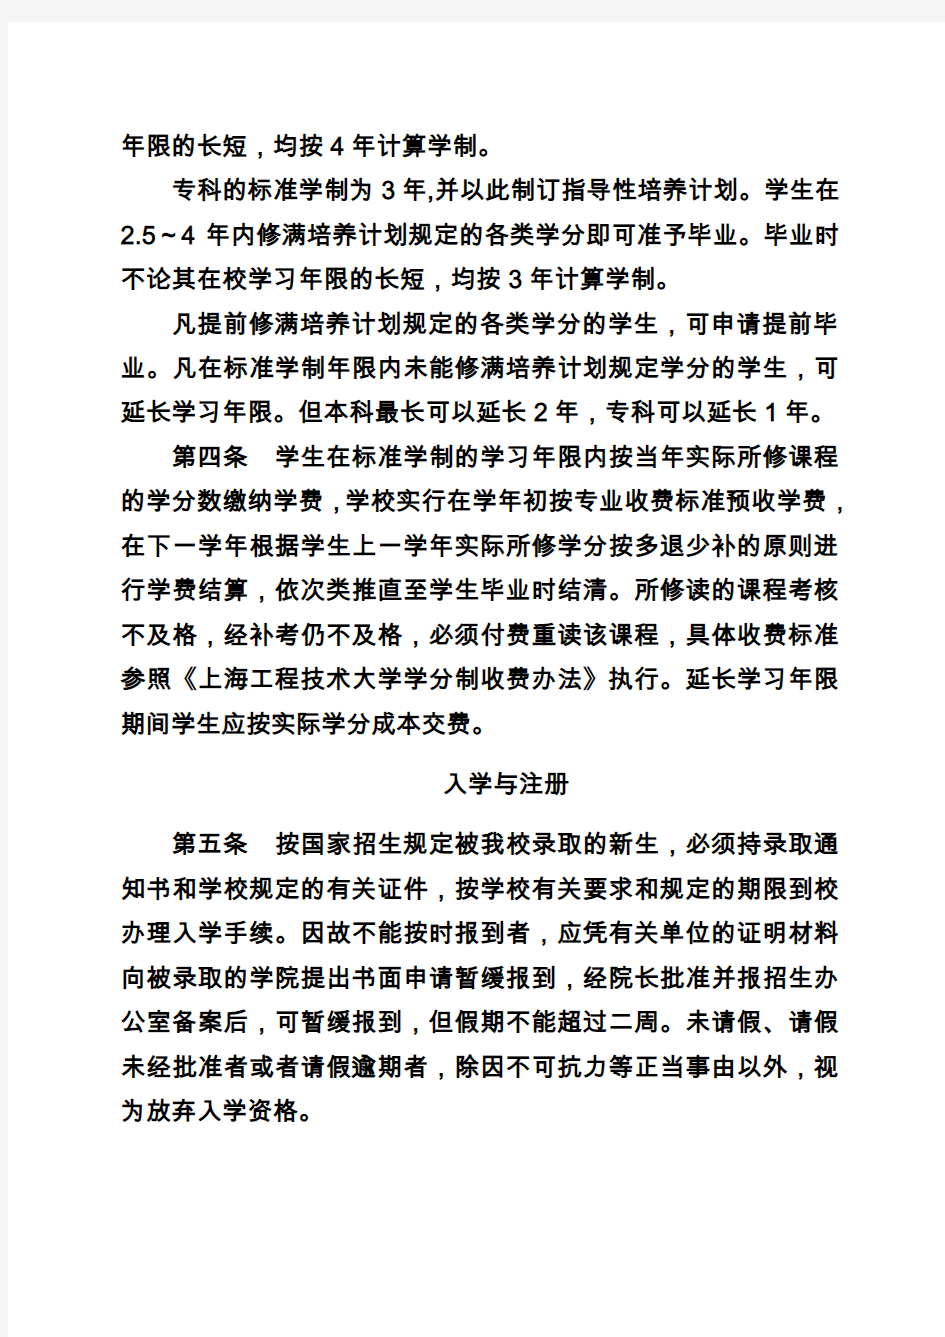 上海工程技术大学学分制学籍管理条例讲解